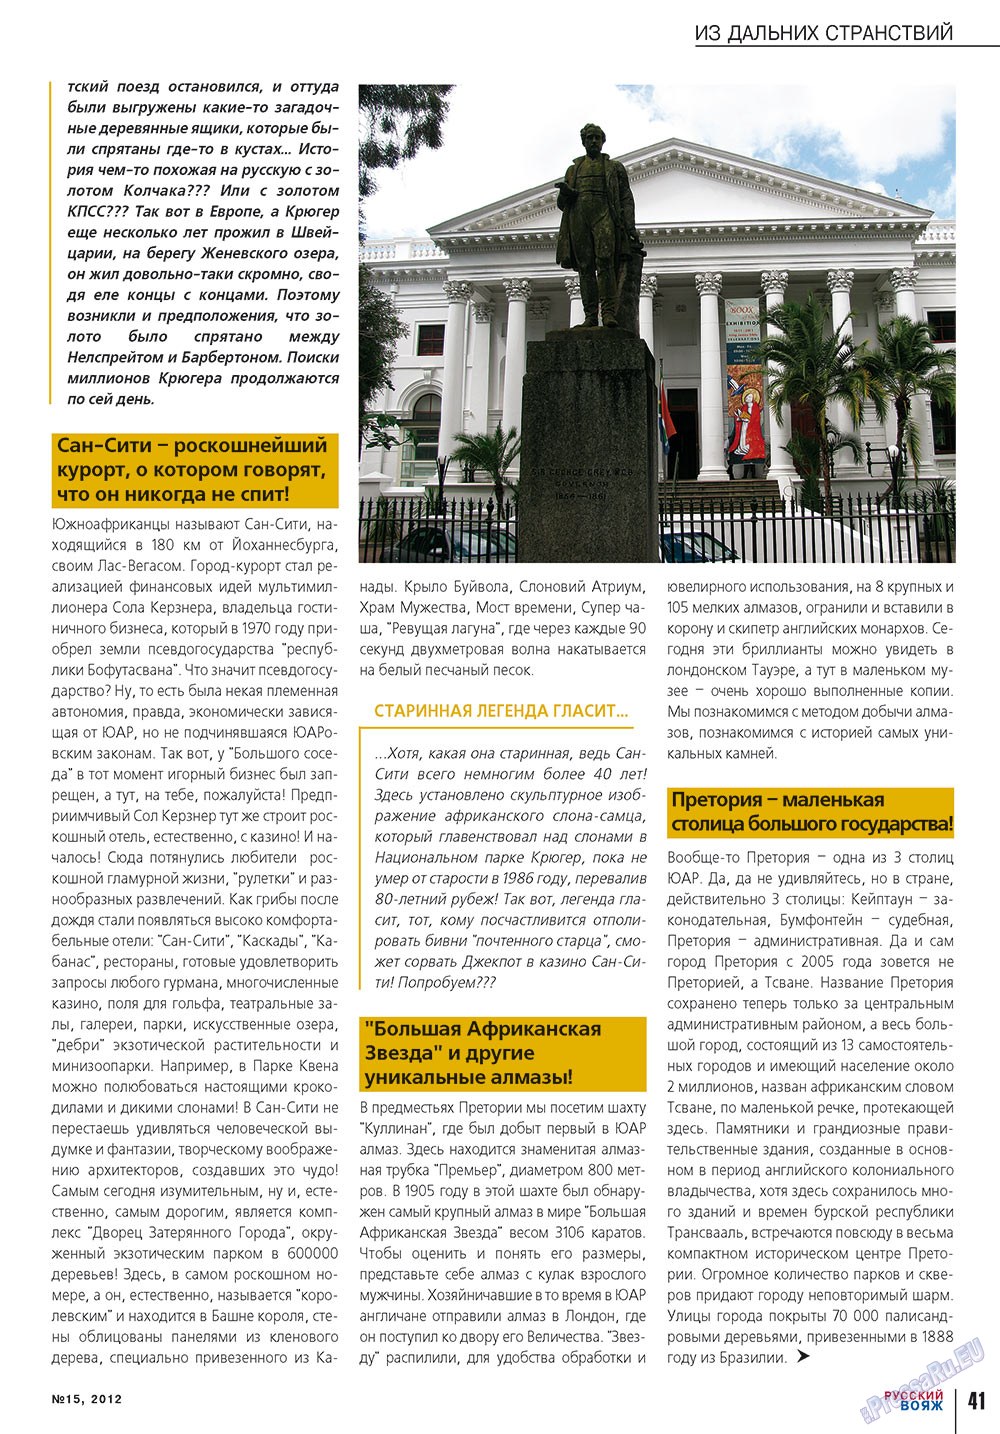 Русский вояж, журнал. 2012 №15 стр.41